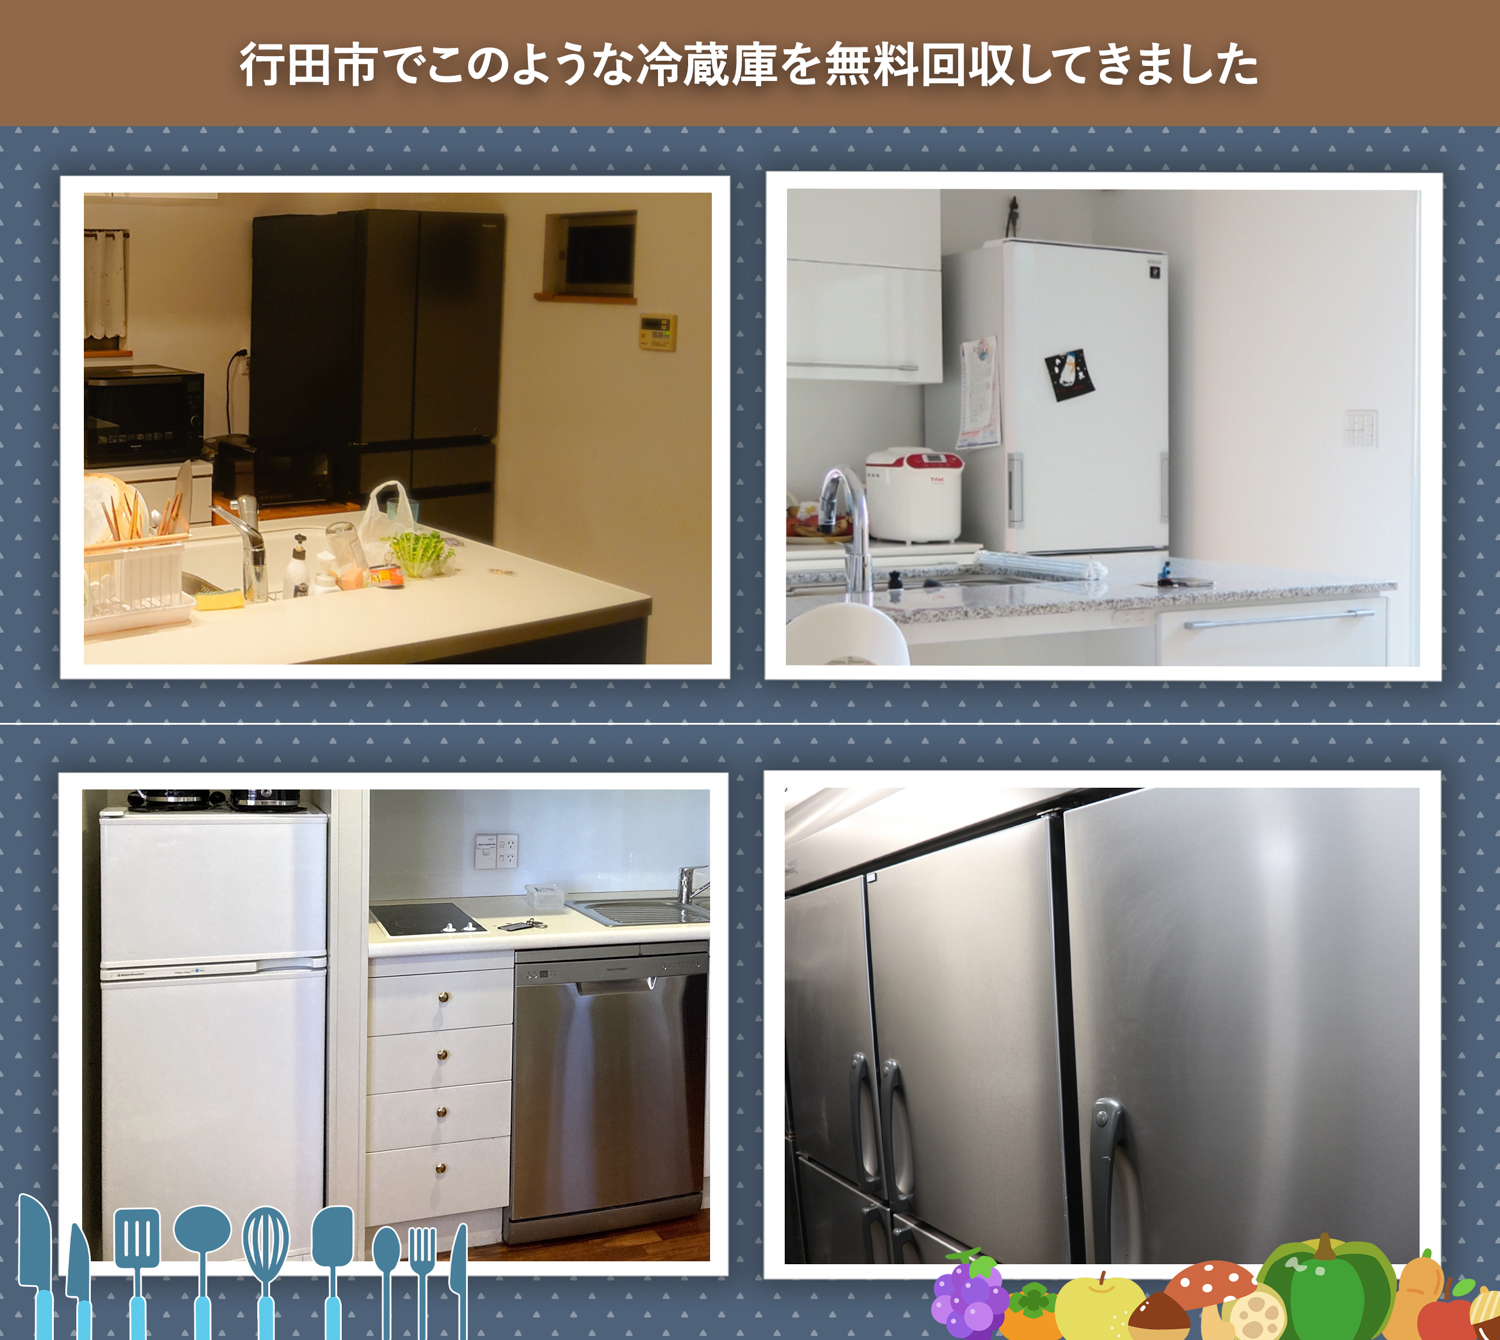 行田市でこのような冷蔵庫を無料回収してきました。